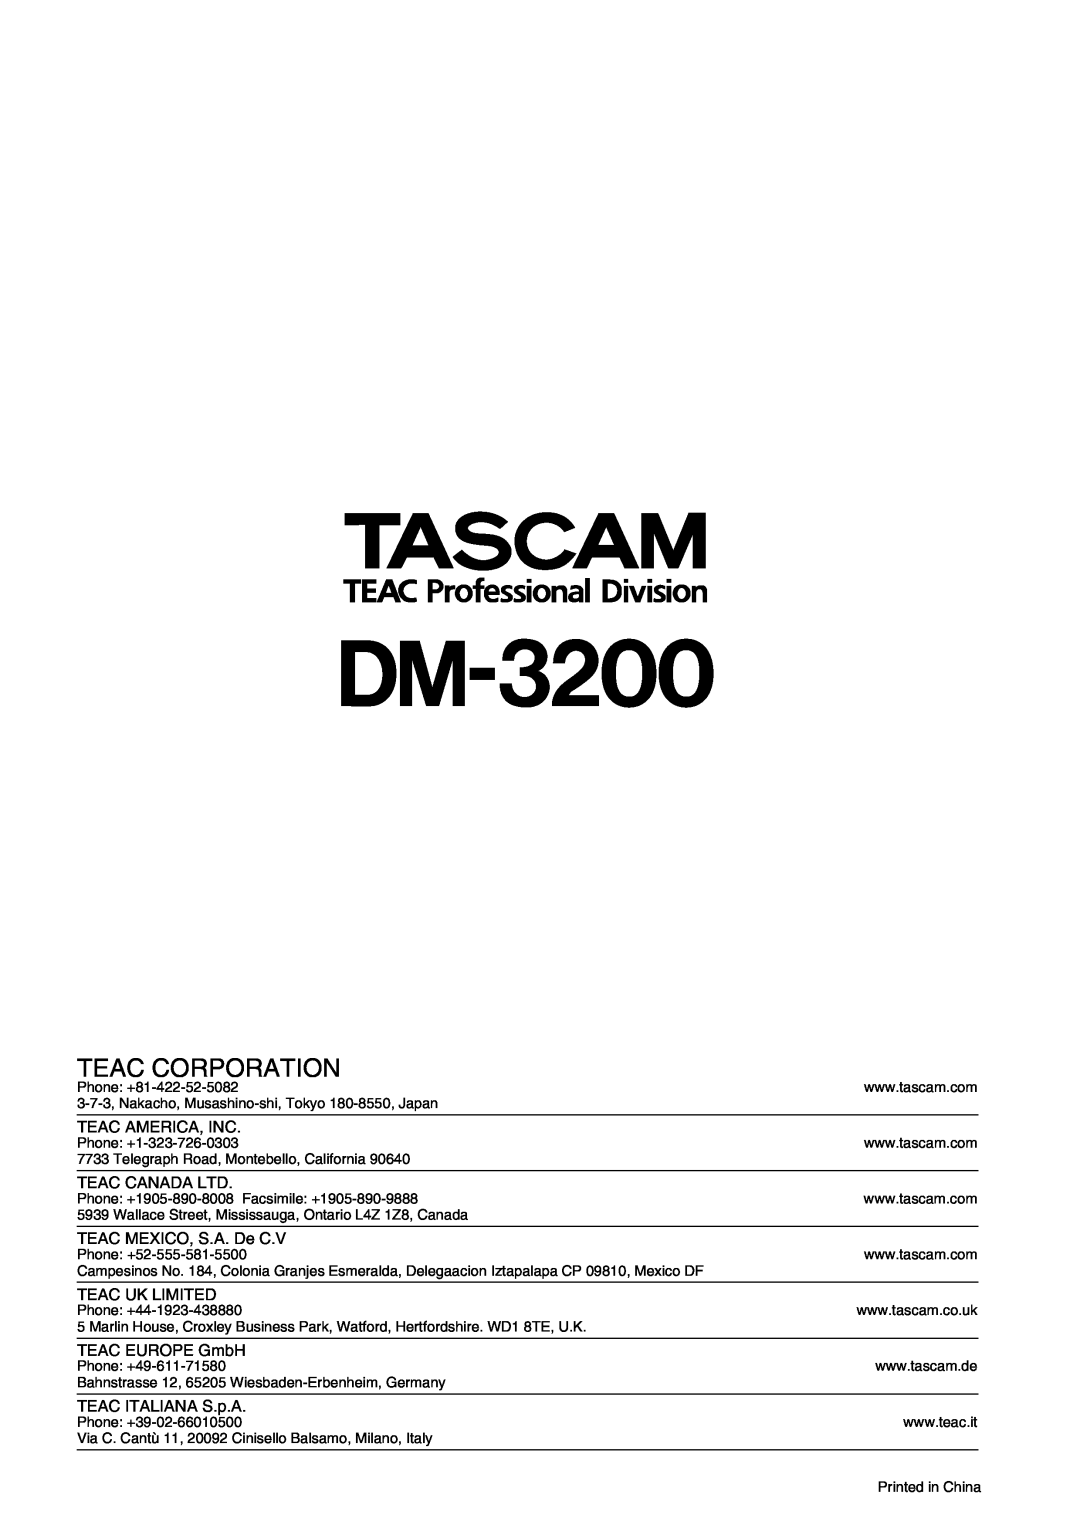 Tascam DM-3200 owner manual Teac Corporation, Teac America, Inc, Teac Canada Ltd, TEAC MEXICO, S.A. De C.V, Teac Uk Limited 